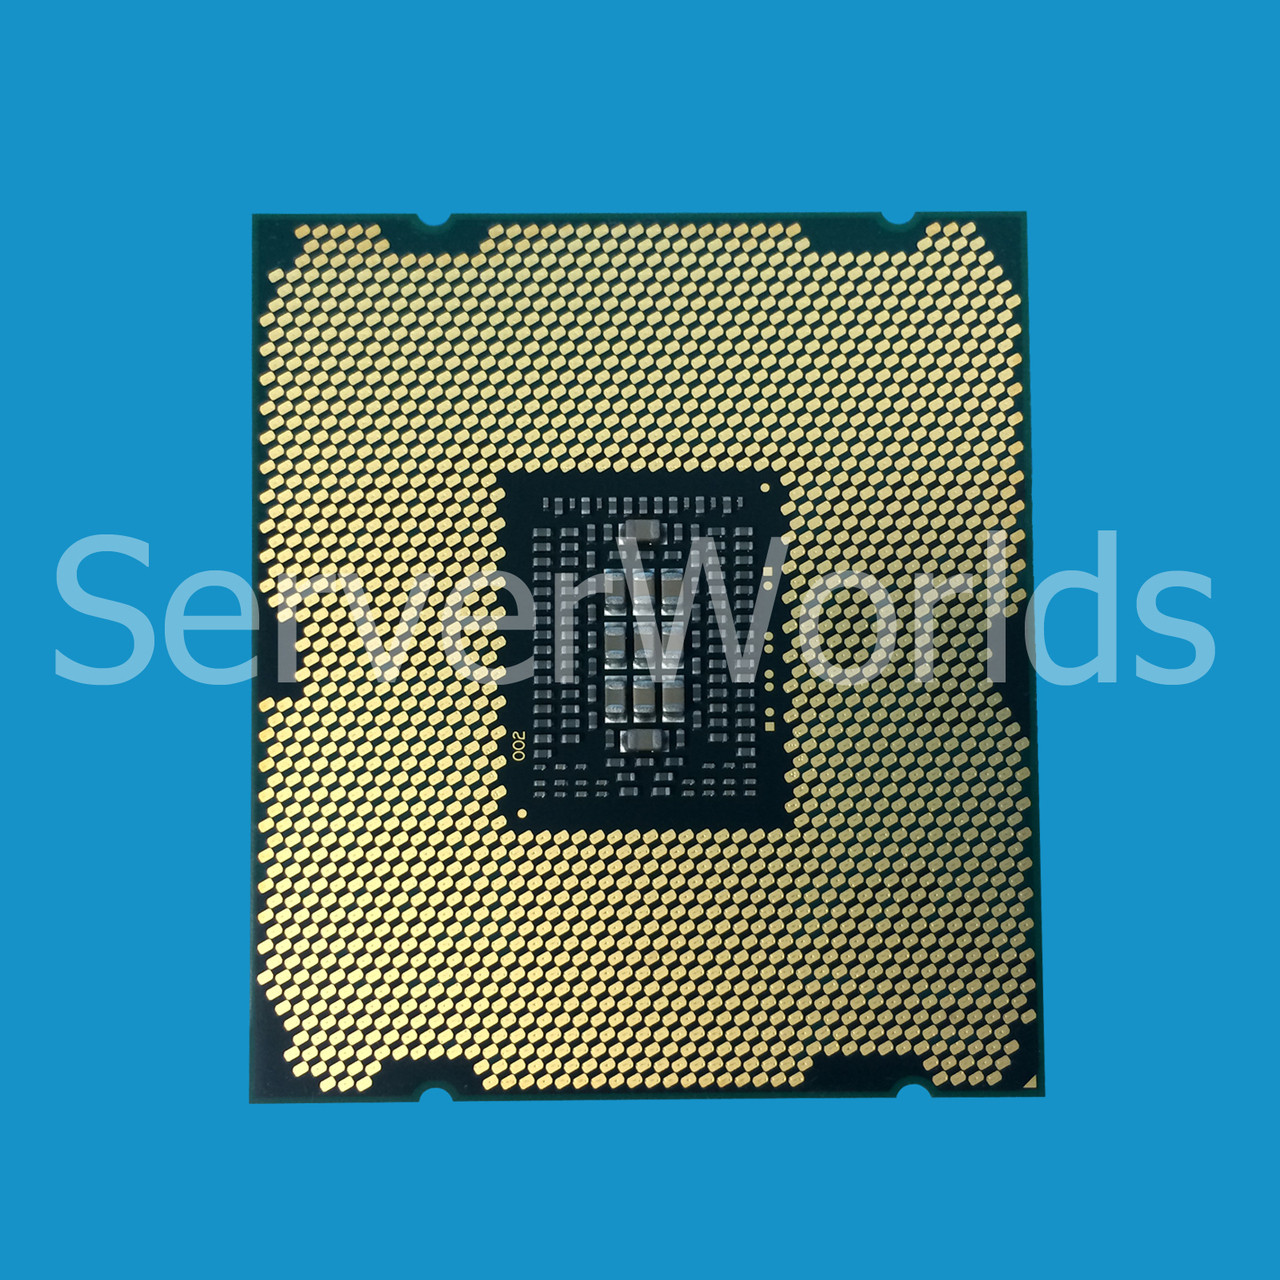 Dell C05C7 Intel Xeon E5-4650 8C 2.7Ghz 20MB 8GTs Processor